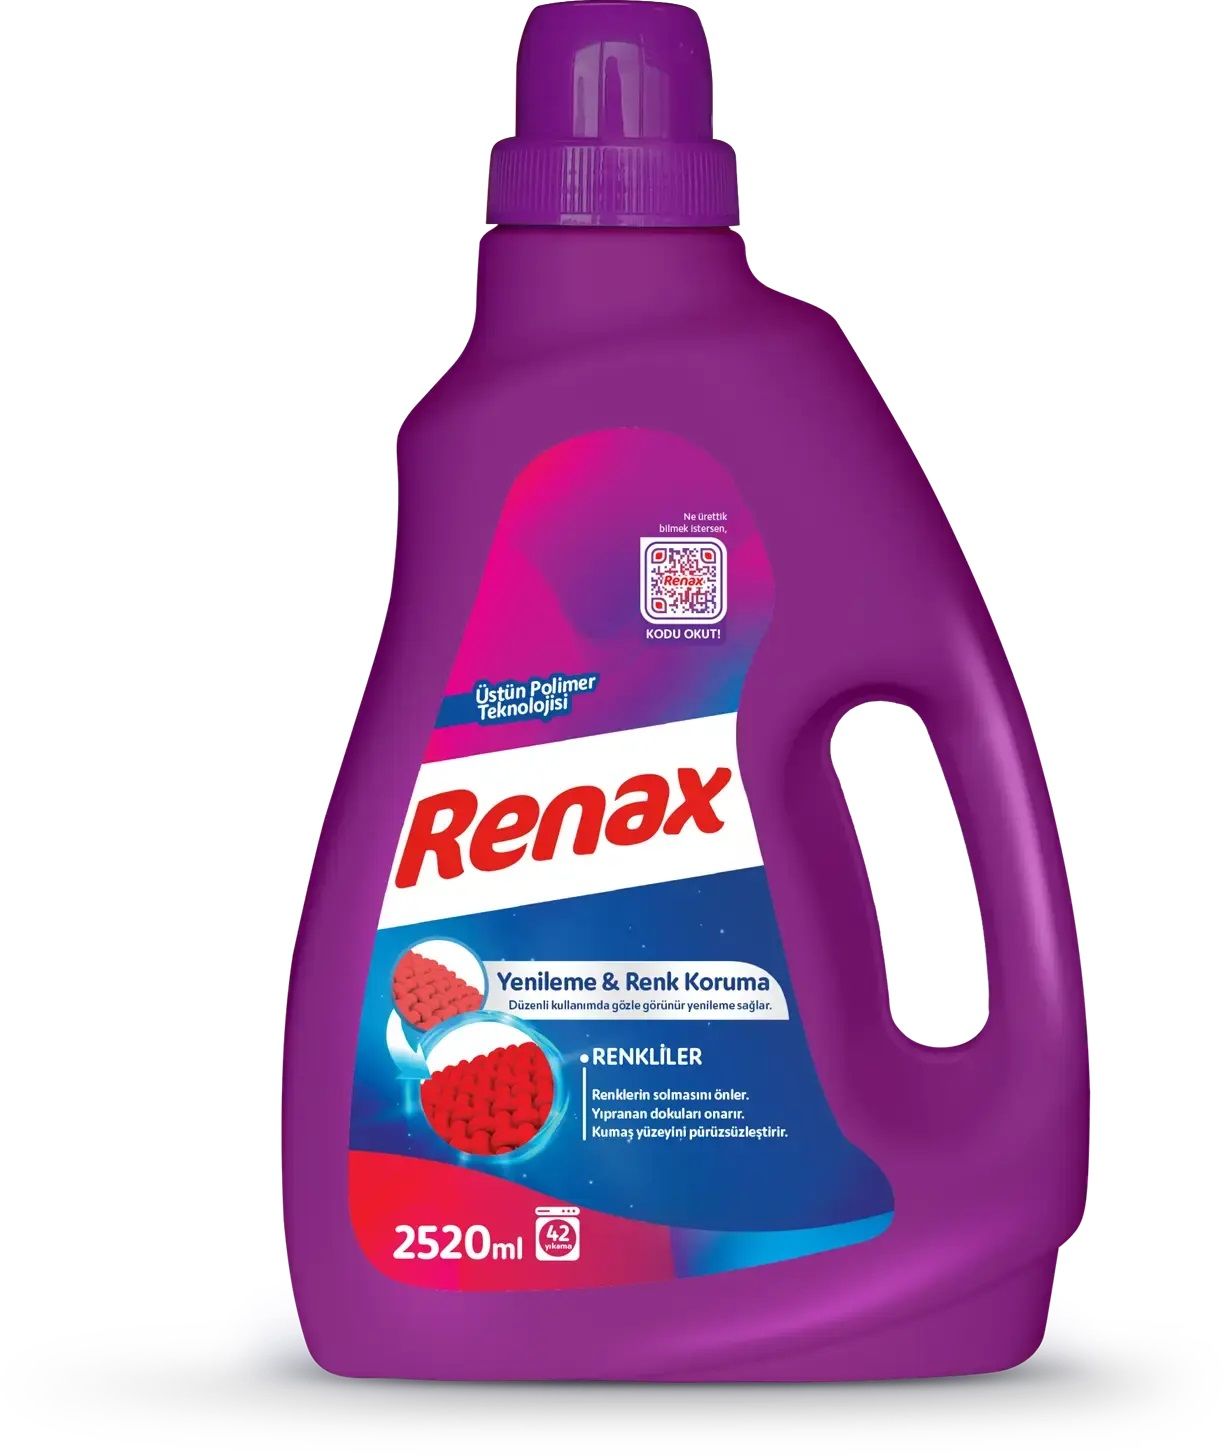 Renax Sıvı Çamaşır Deterjanı Renkliler 2520ml